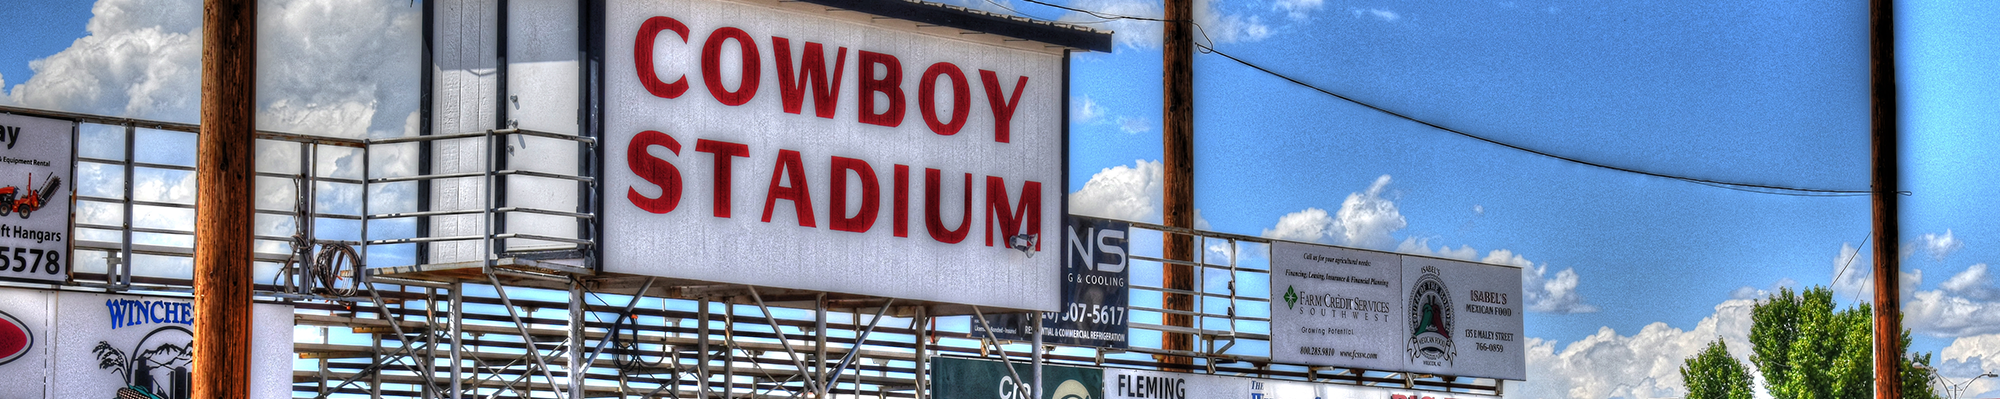 Cowboy stadium